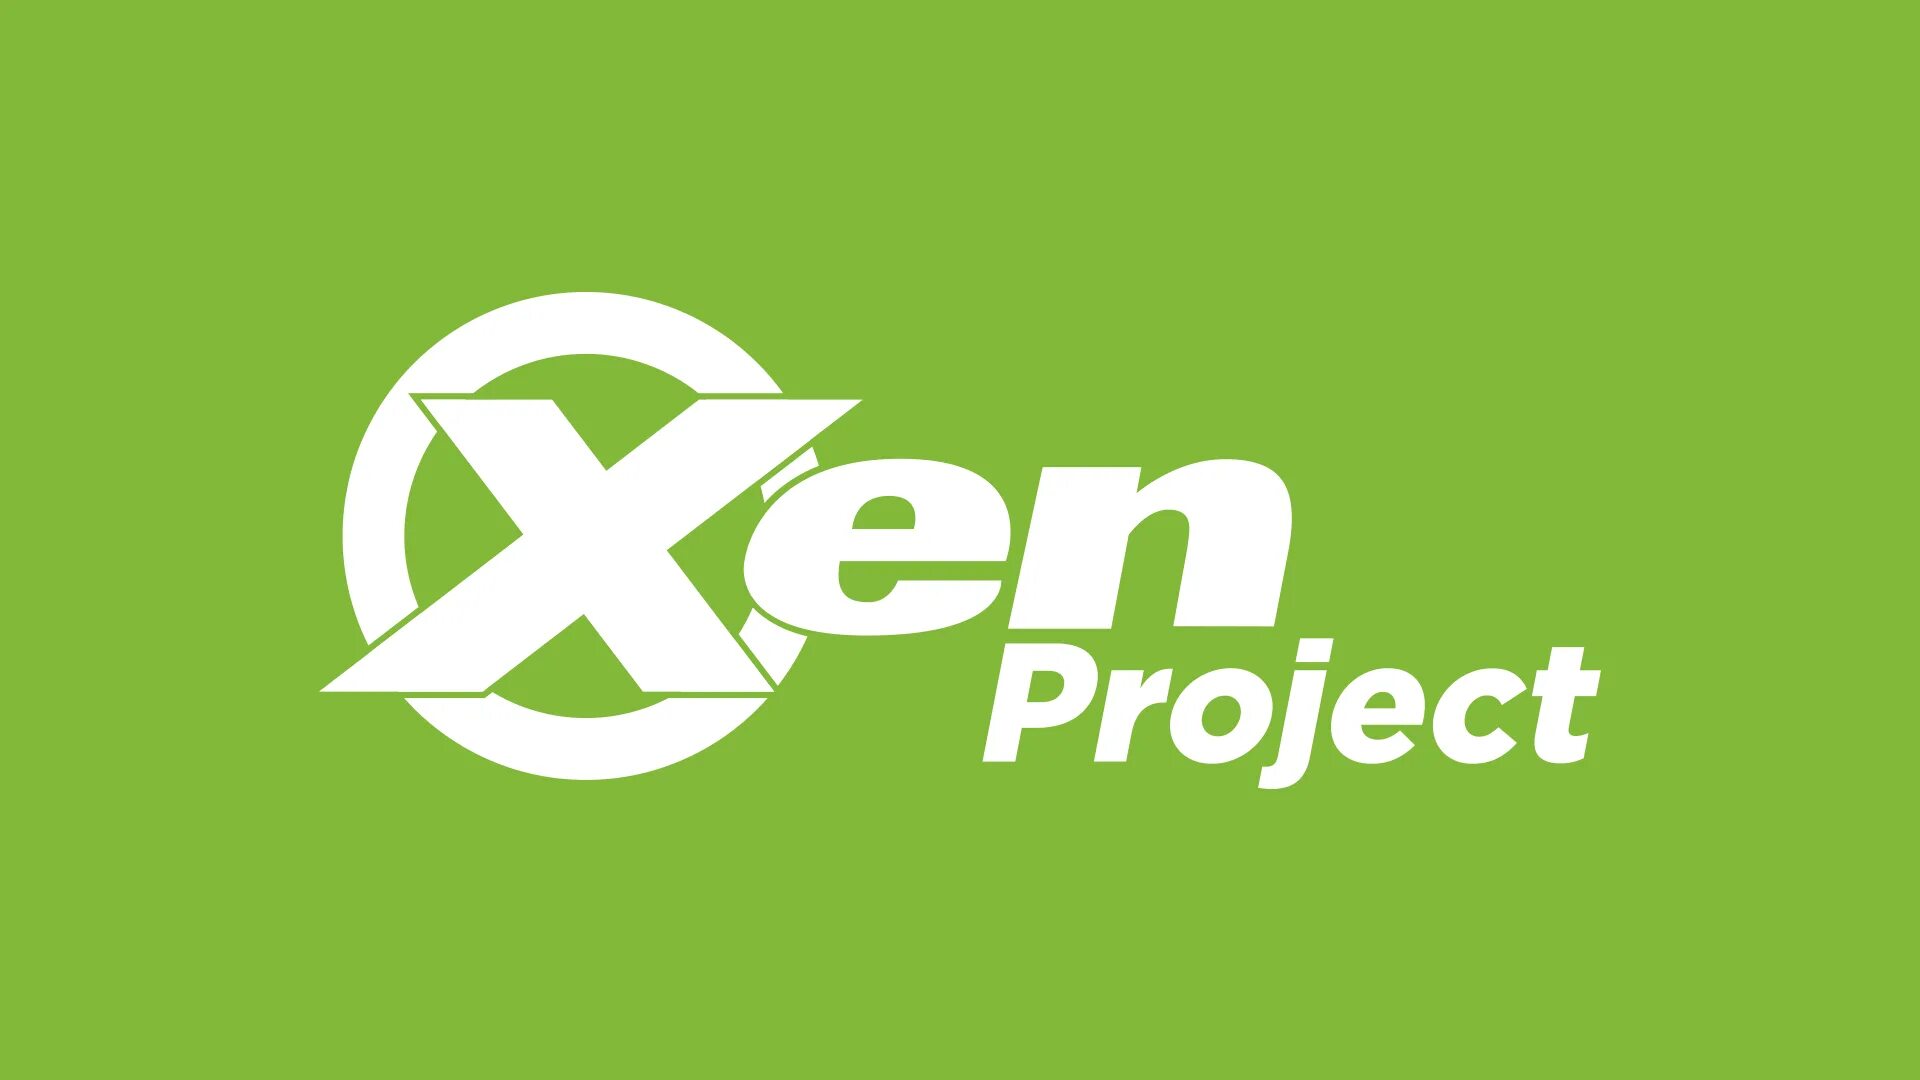 Release add. Xen гипервизор. XENSERVER логотип. Logo XENSERVER гипервизор. Xen виртуализация logo.